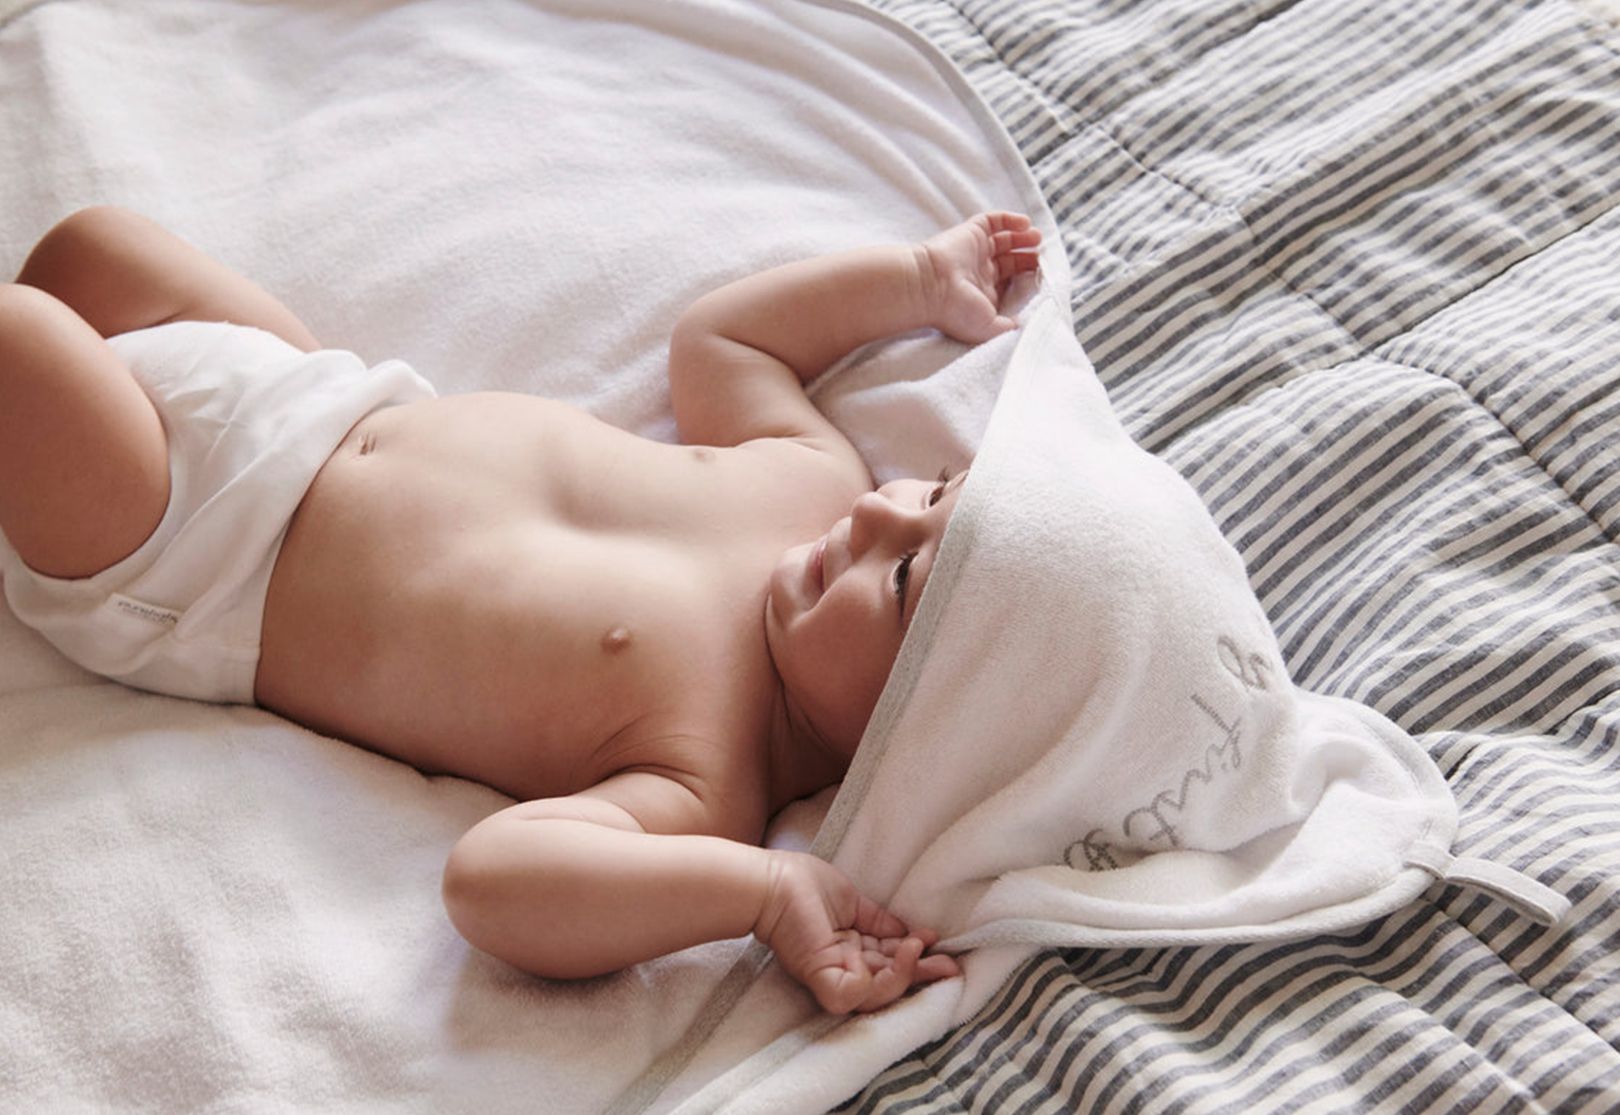 Baby Bath Essentials Checklist